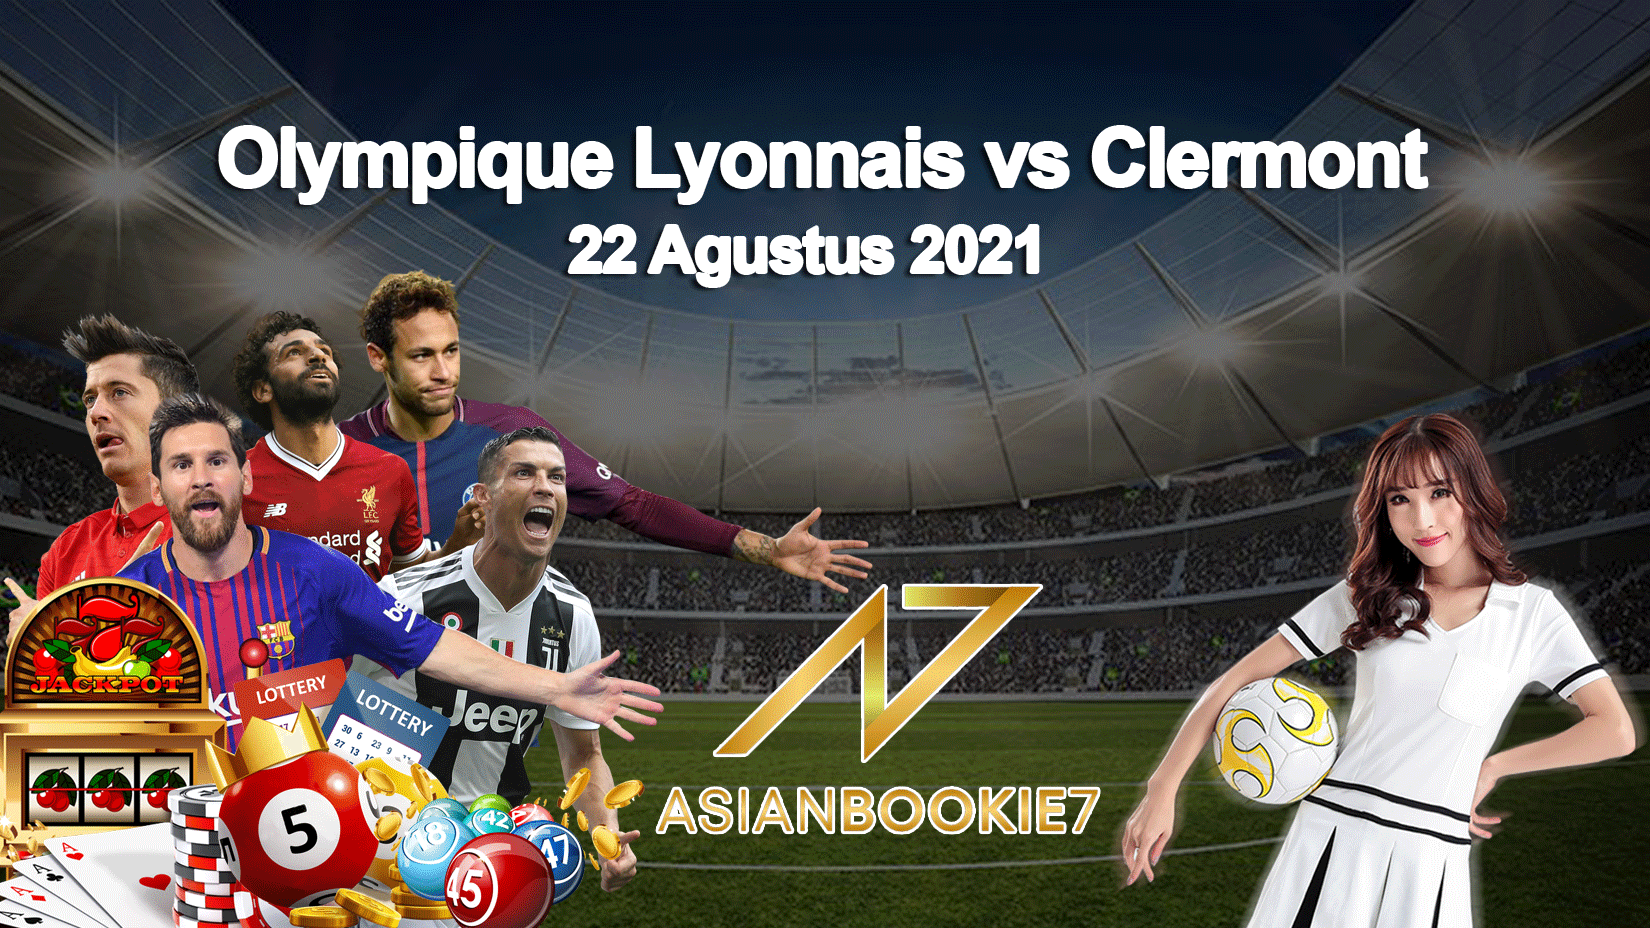 Prediksi Olympique Lyonnais vs Clermont 22 Agustus 2021